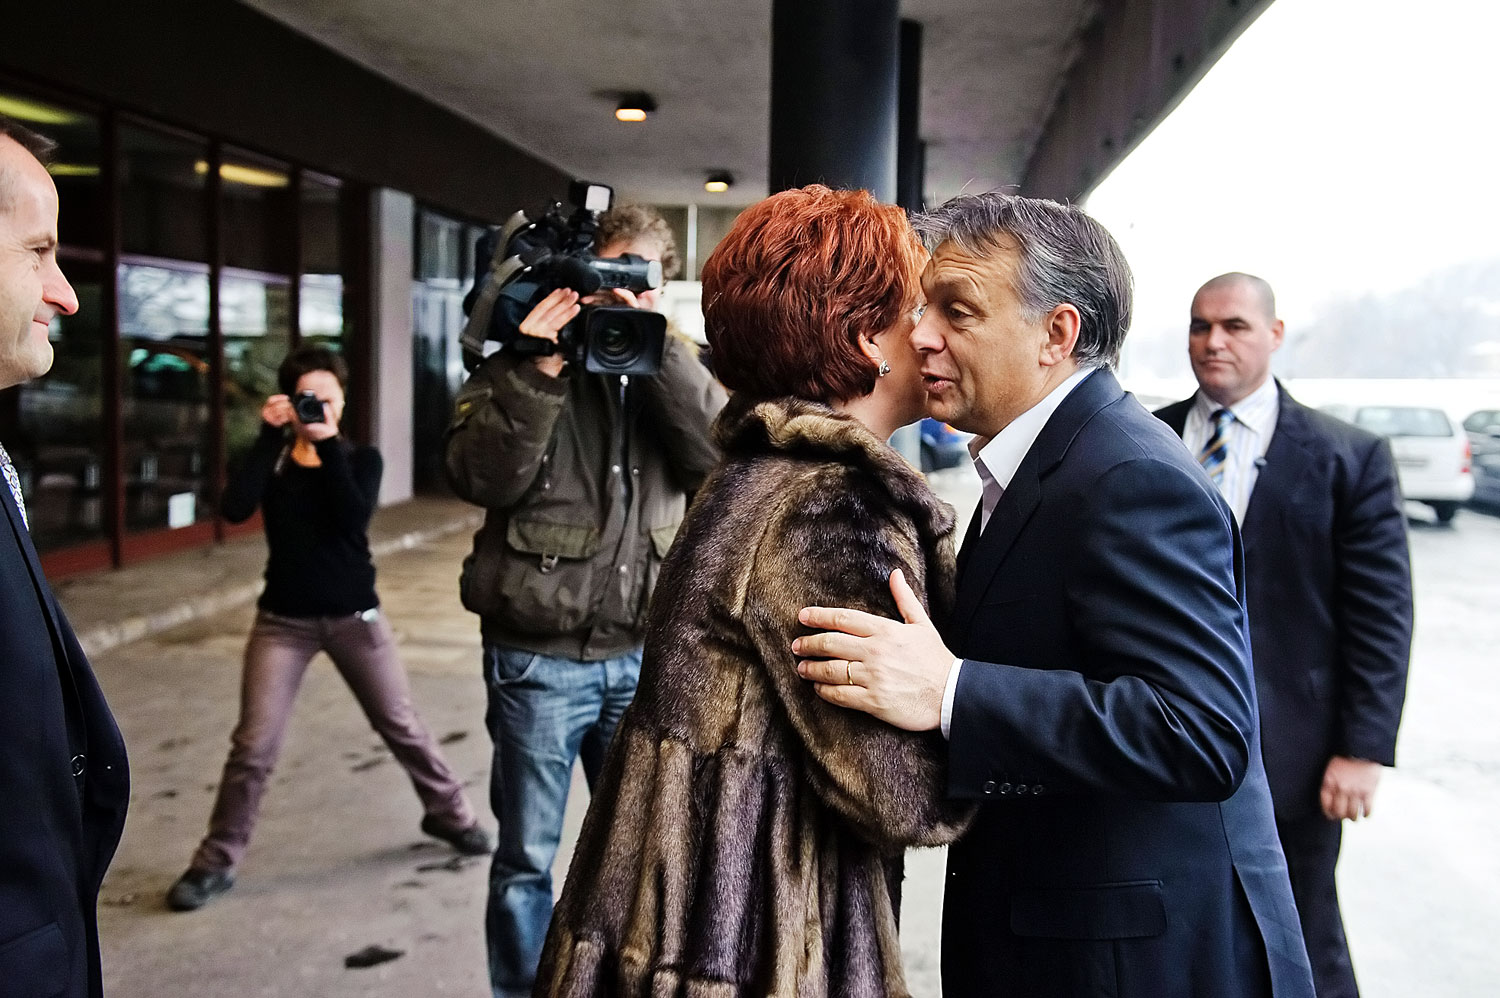 Székyné Sztrémi Melinda polgármester 2012-ben fogadja a nagyot mondó kormányfőt